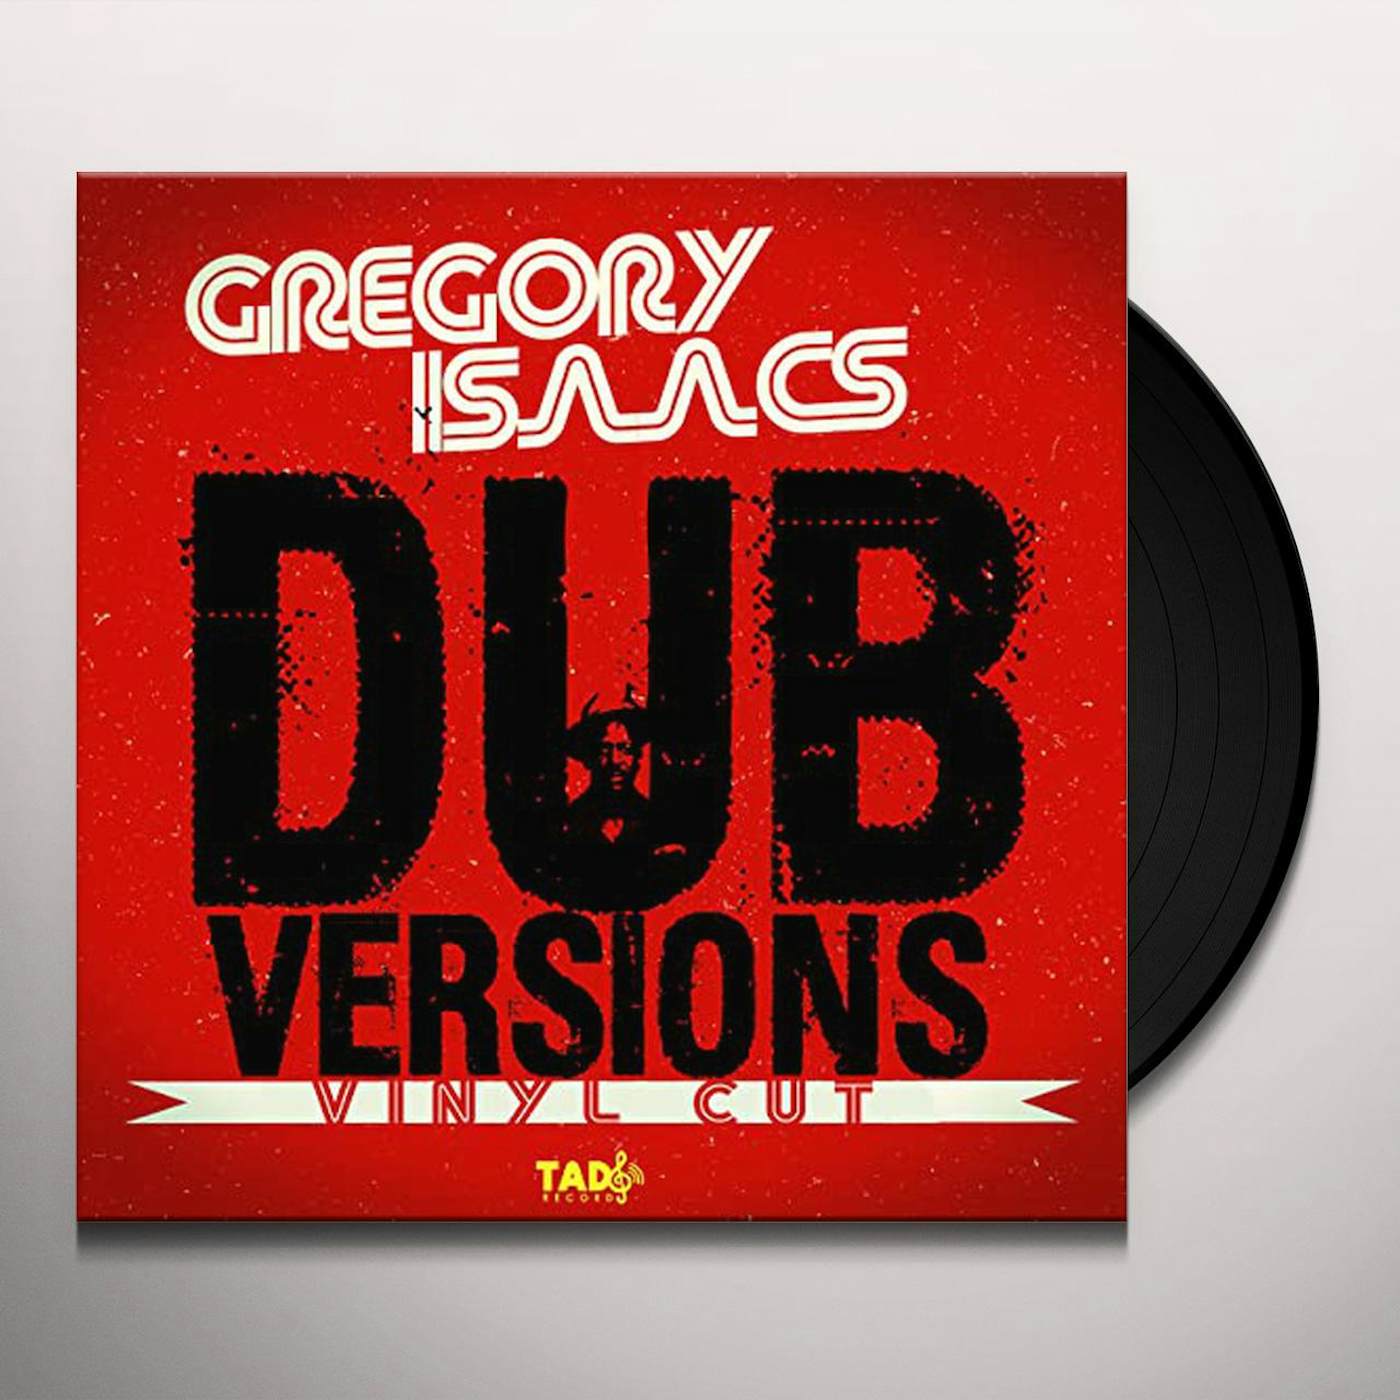 Gregory Isaacs DUB VERSIONS (VINYL CUT) Vinyl Record